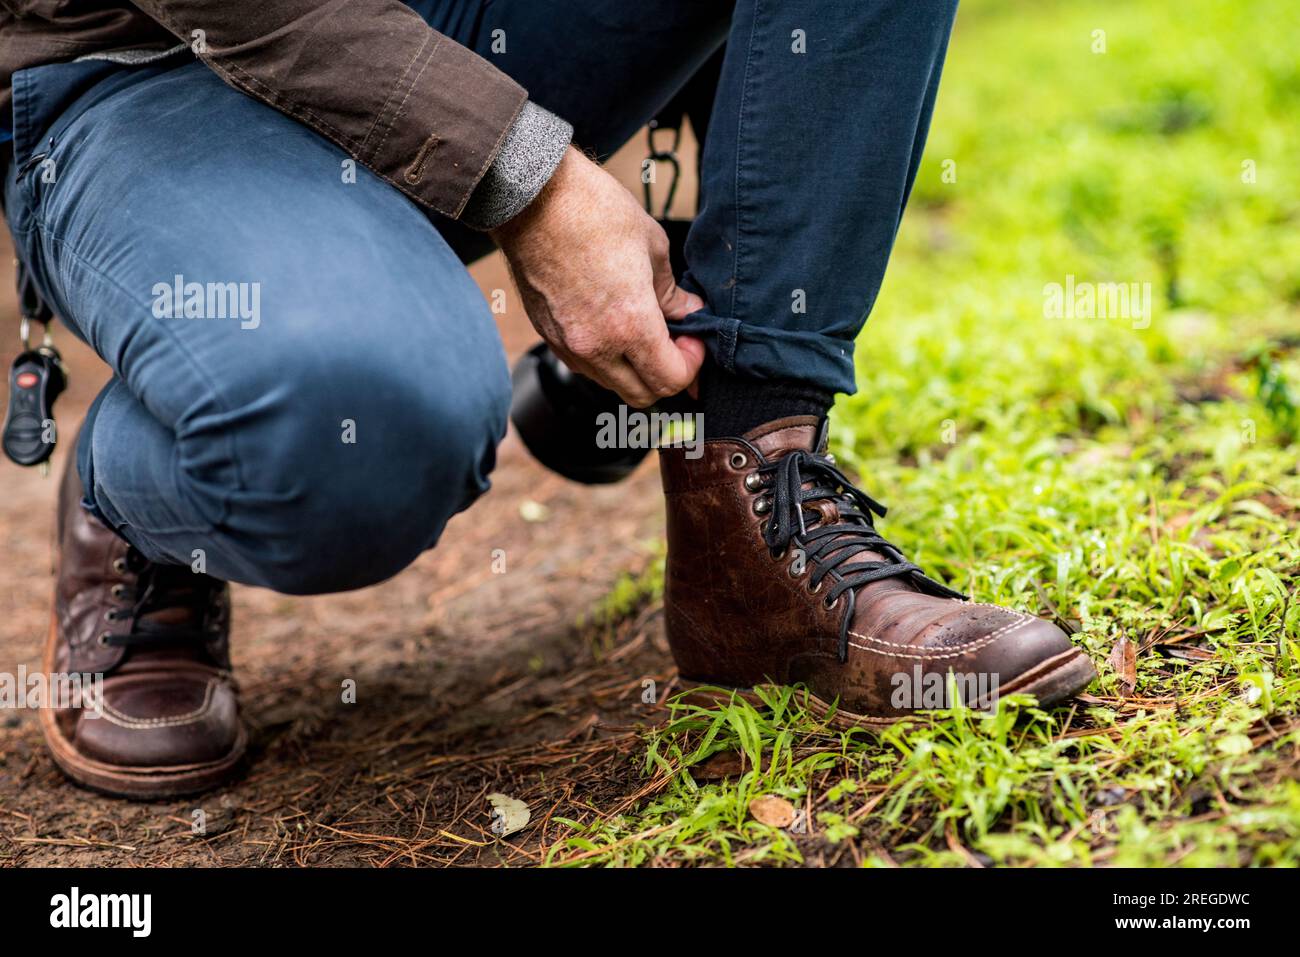 Dettaglio di pantaloni regolabili da uomo con particolare attenzione agli stivali da trekking in pelle Foto Stock